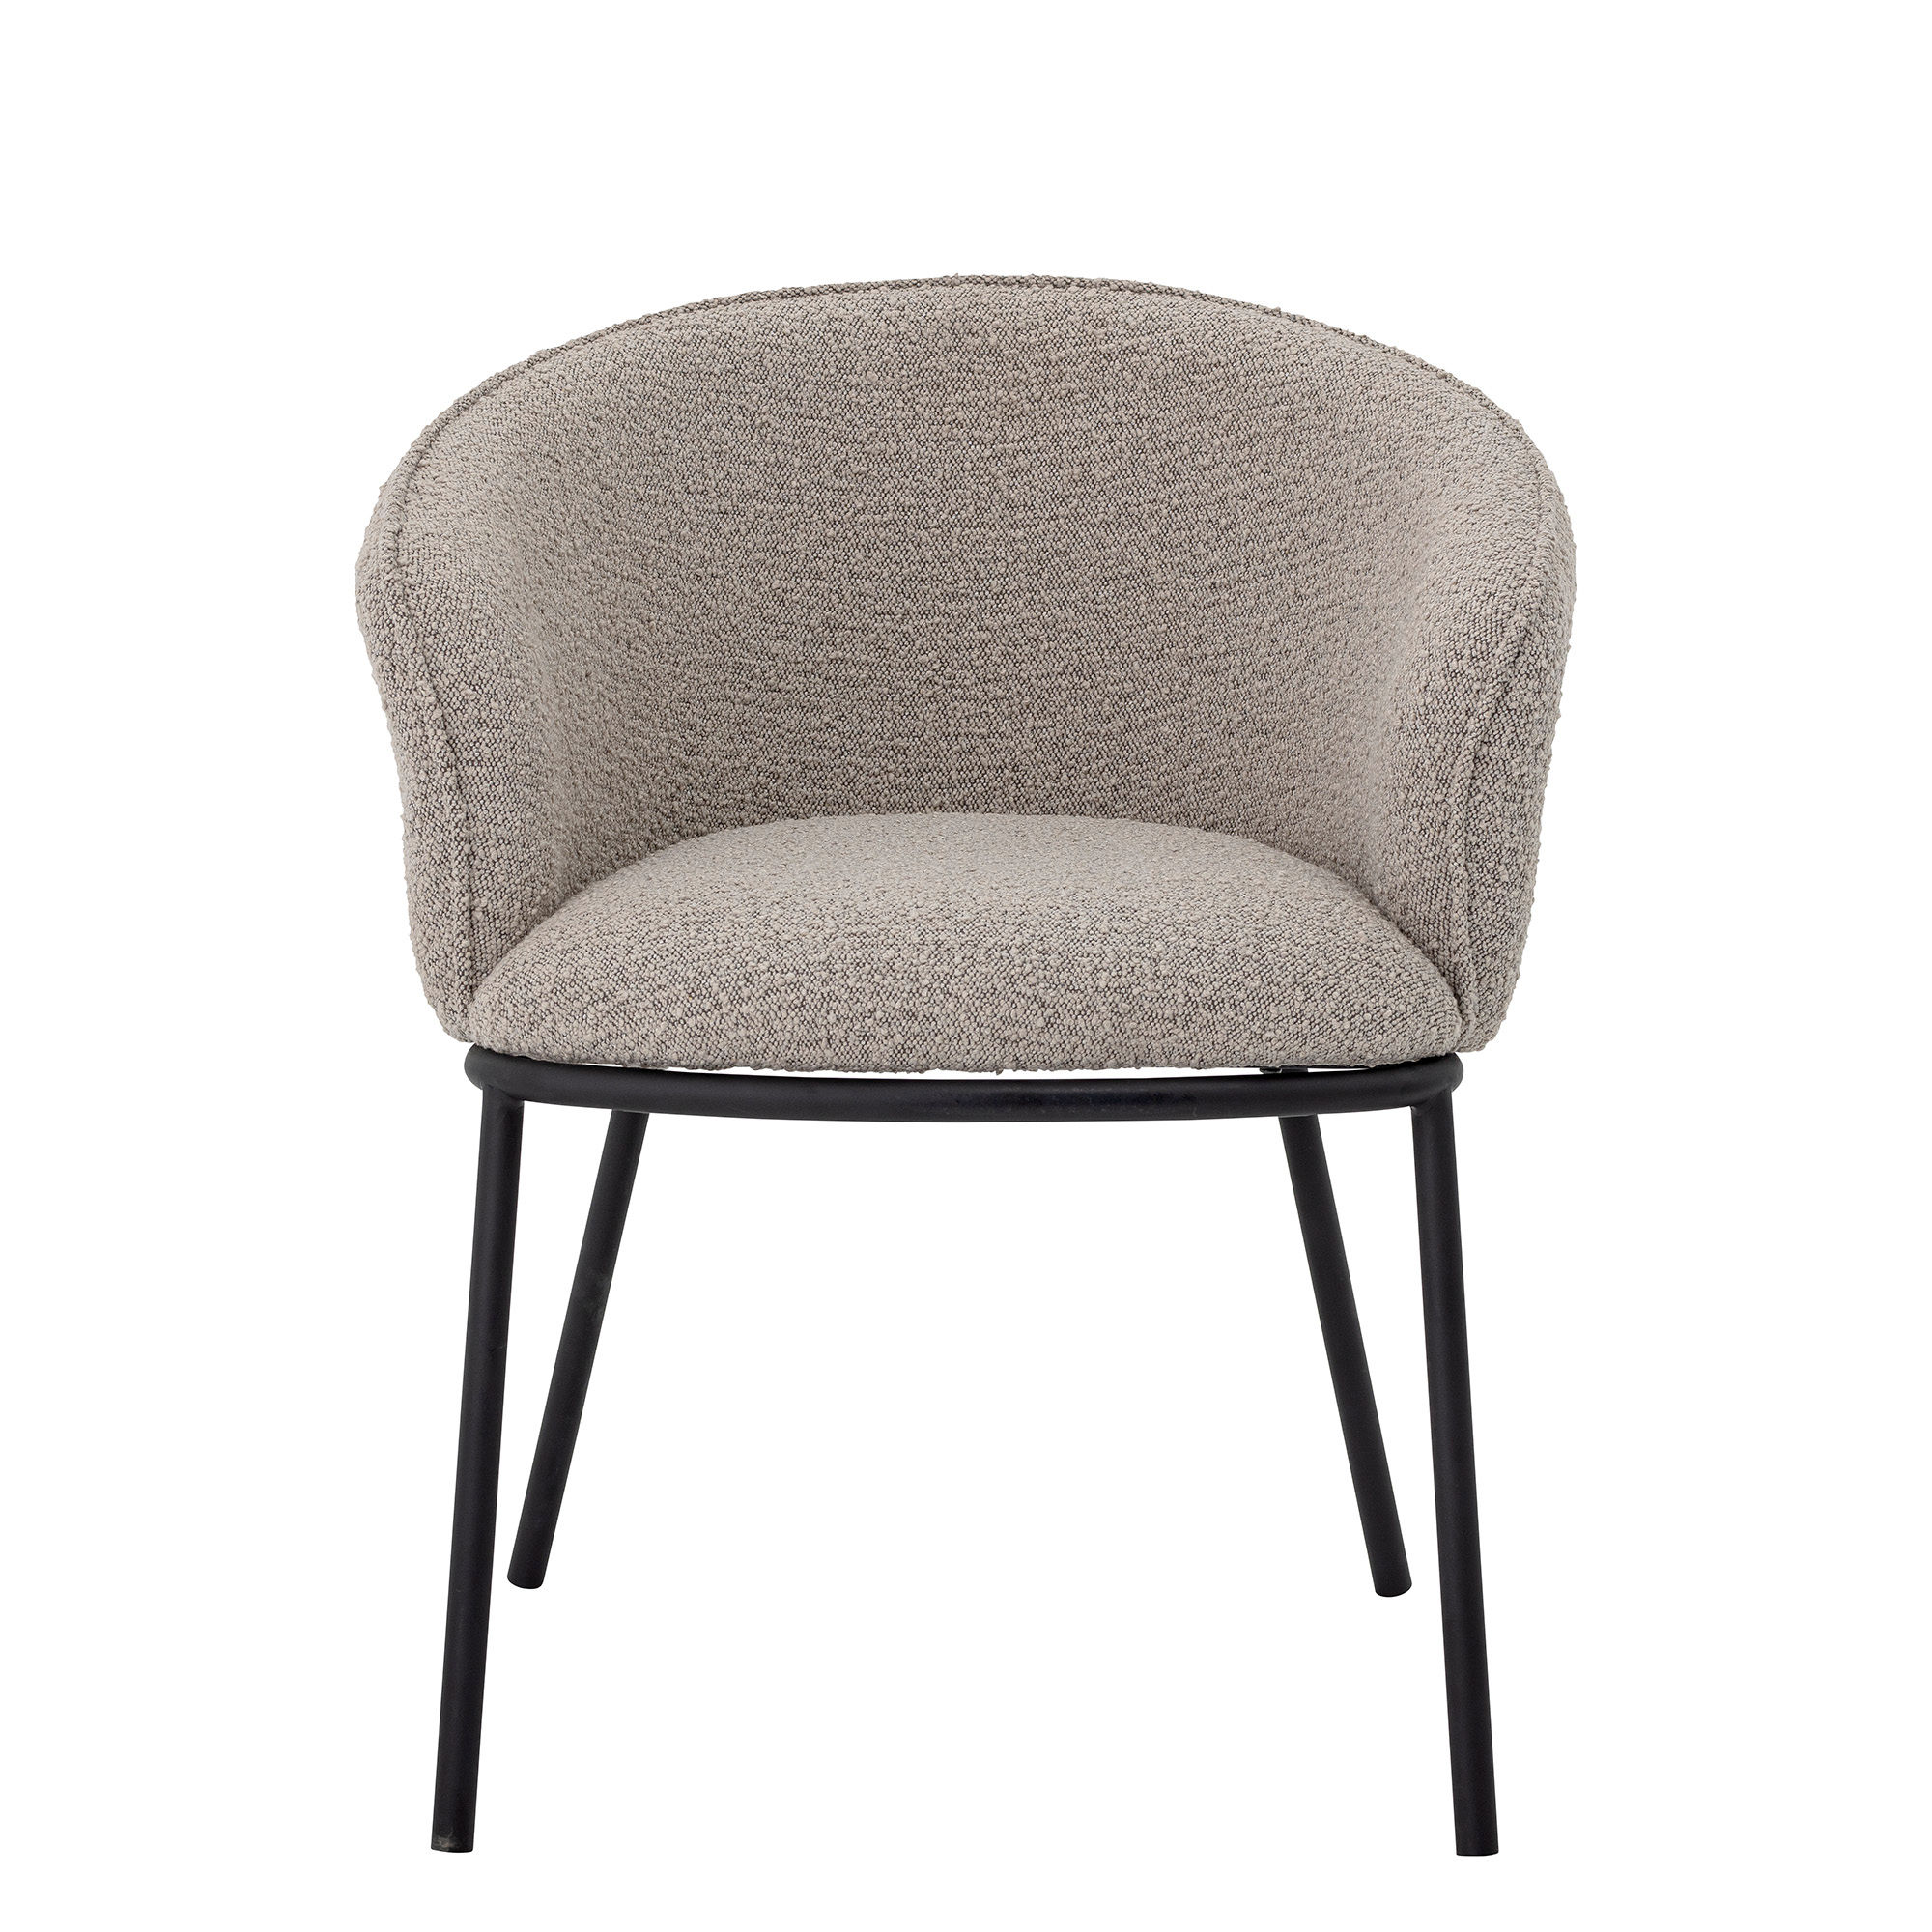 BLOOMINGVILLE Cortone spisebordsstol, m. armlæn - grå polyester og sort metal